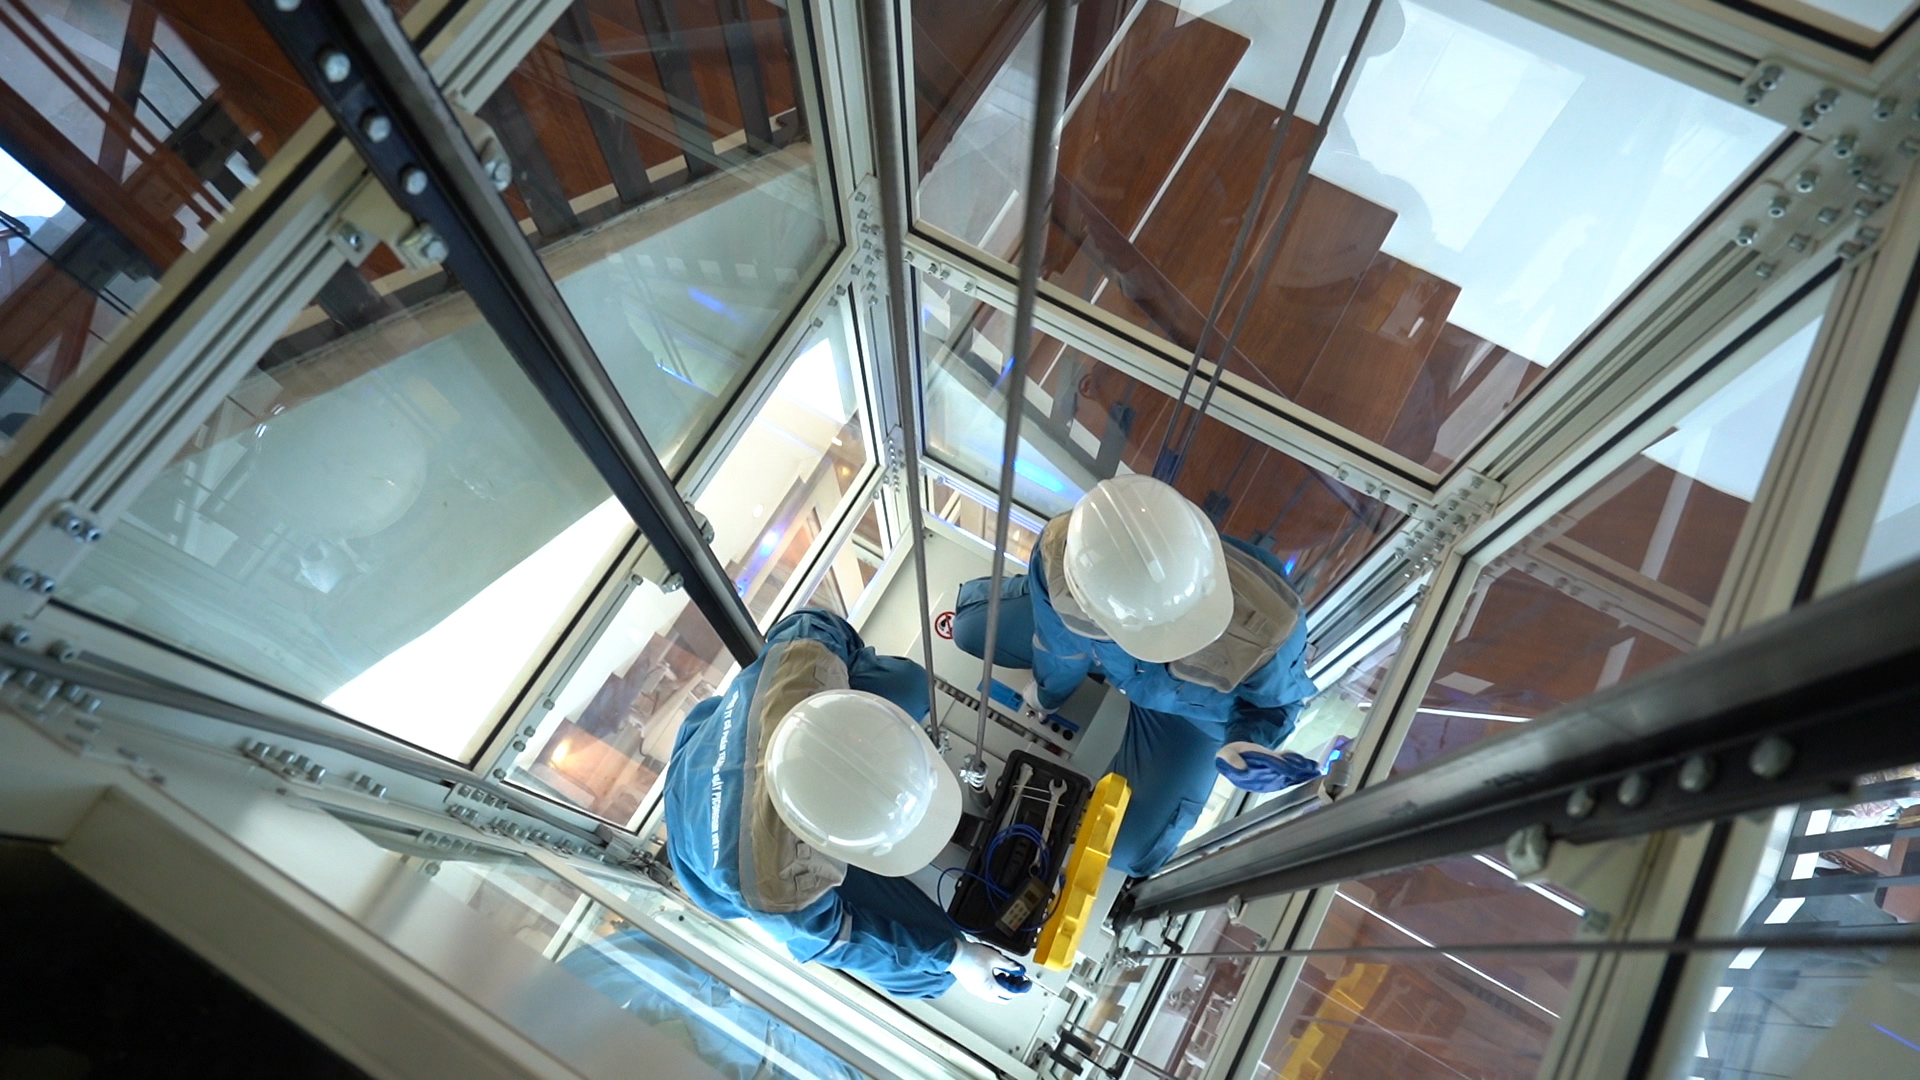 Quy trình bảo trì thang máy chuyên nghiệp của Piconorm